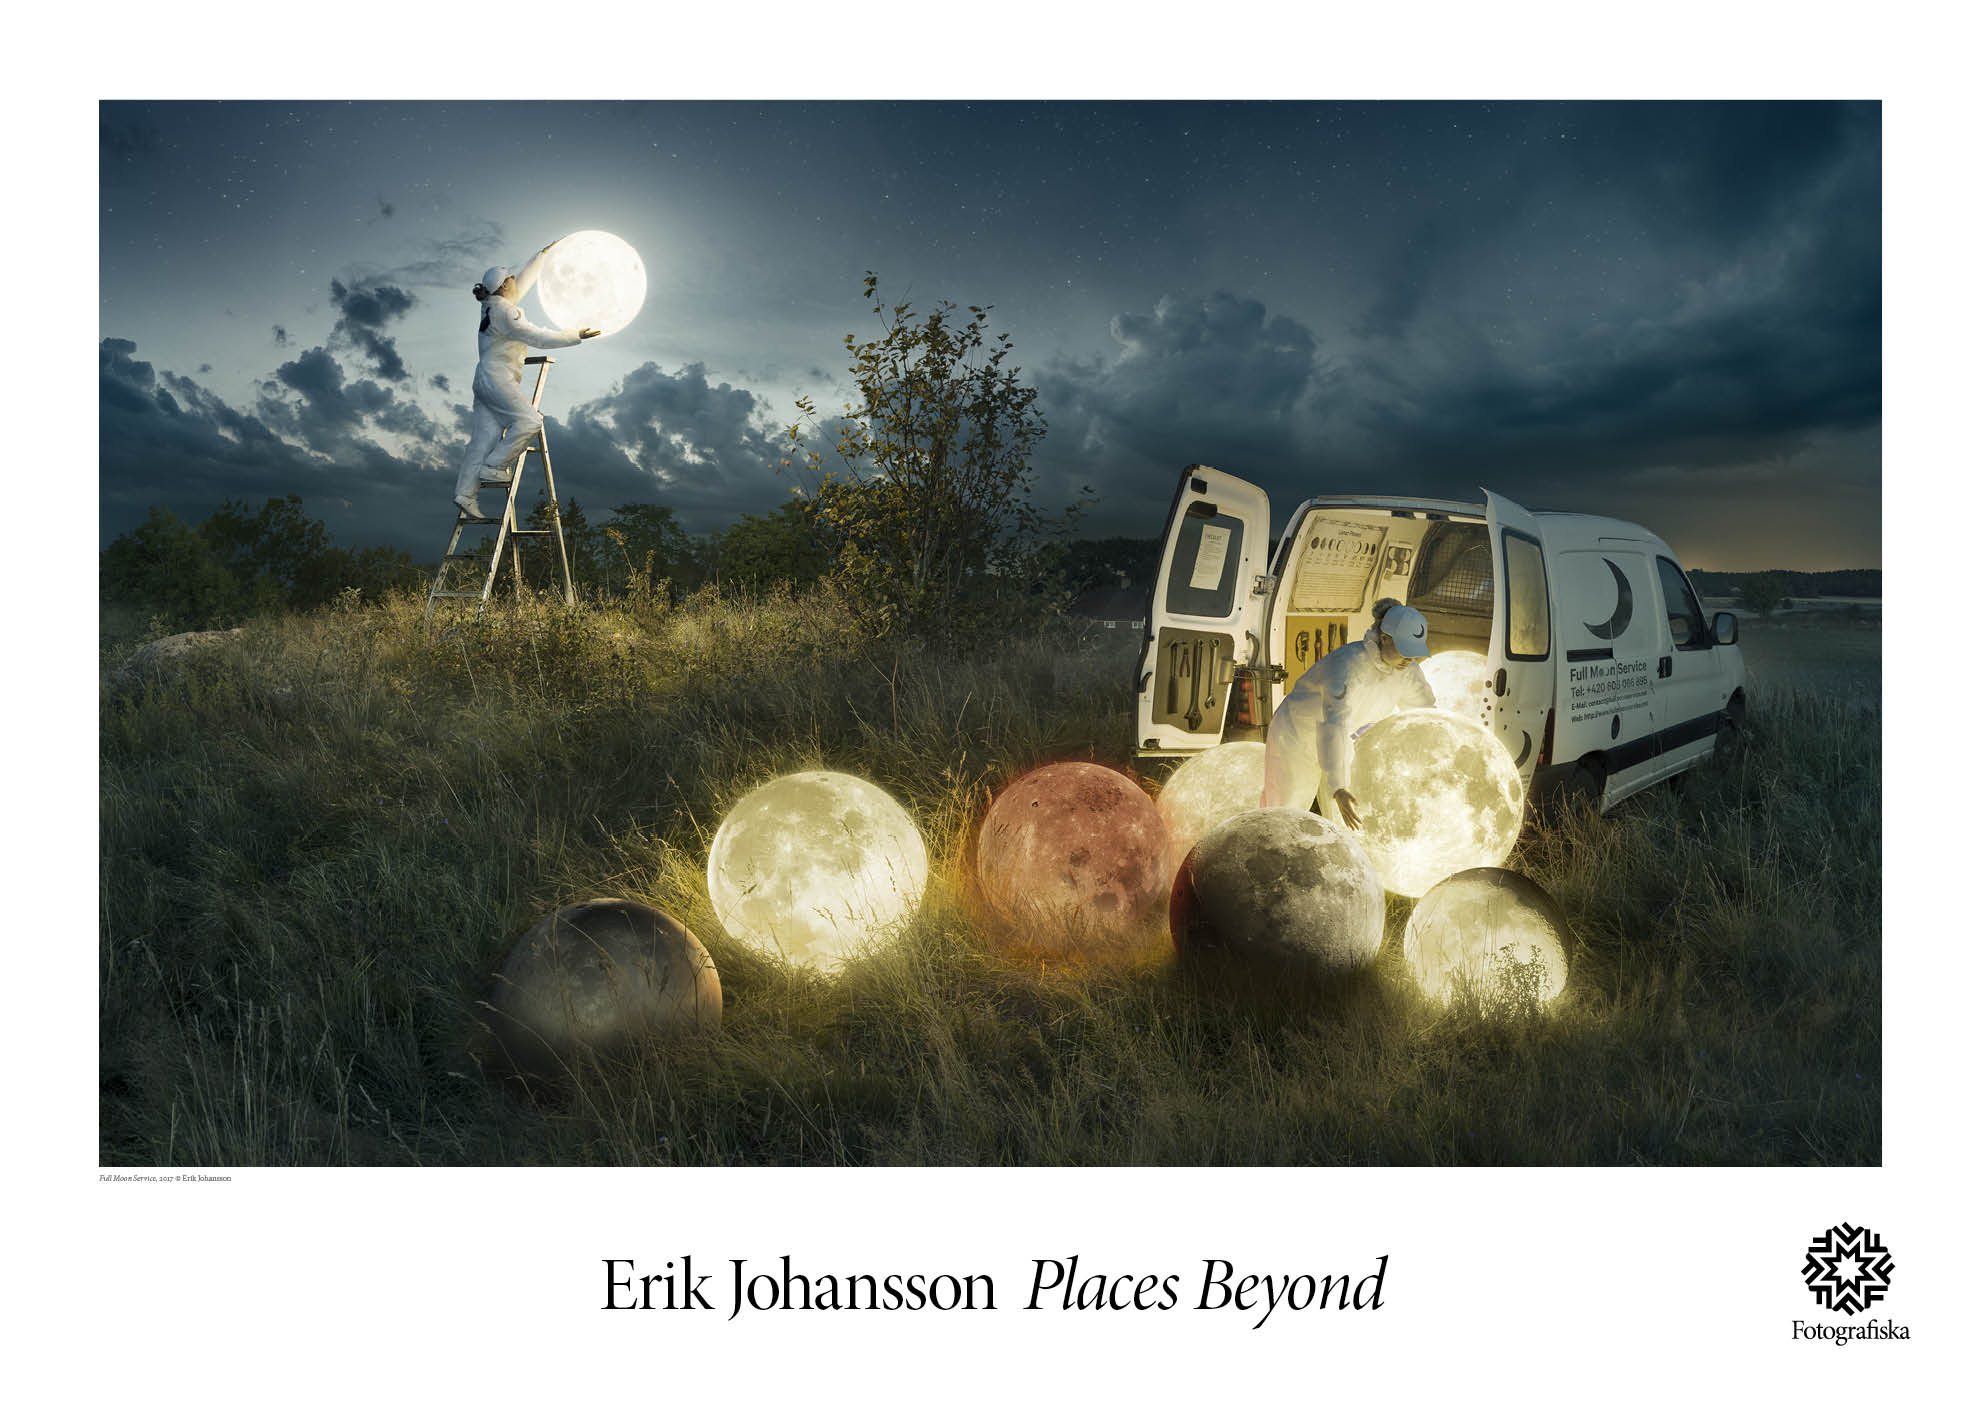 Erik Johansson, Full Moon Service #6372